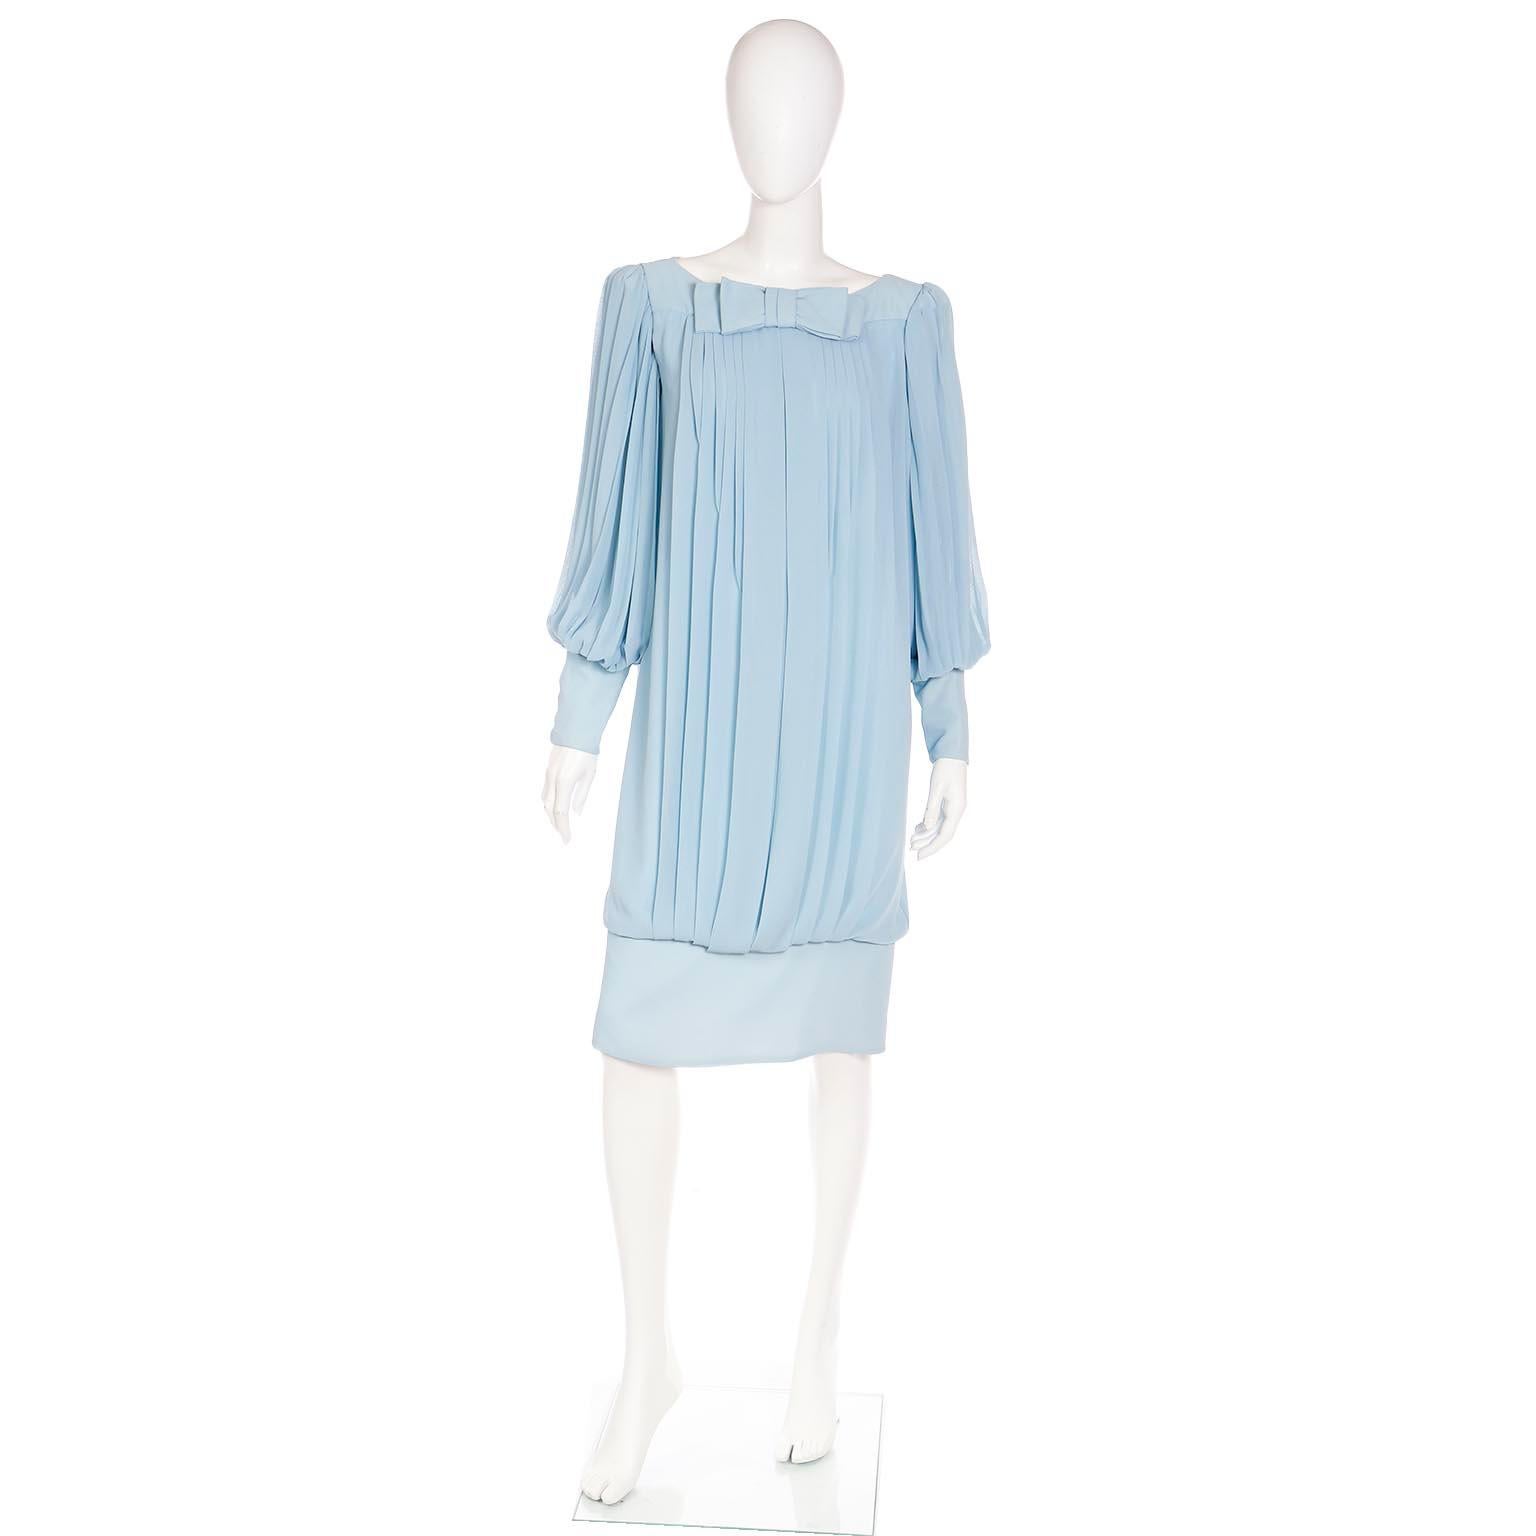 Wir lieben einzigartige Vintage-Kleider aus den 1960er Jahren und dies ist ein fabelhaftes blaues Seidenchiffon-Abend- oder Tageskleid mit einem gebänderten Saum in einem locker drapierten Faltenstil. Das Kleid hat eine Schleife in der Mitte des